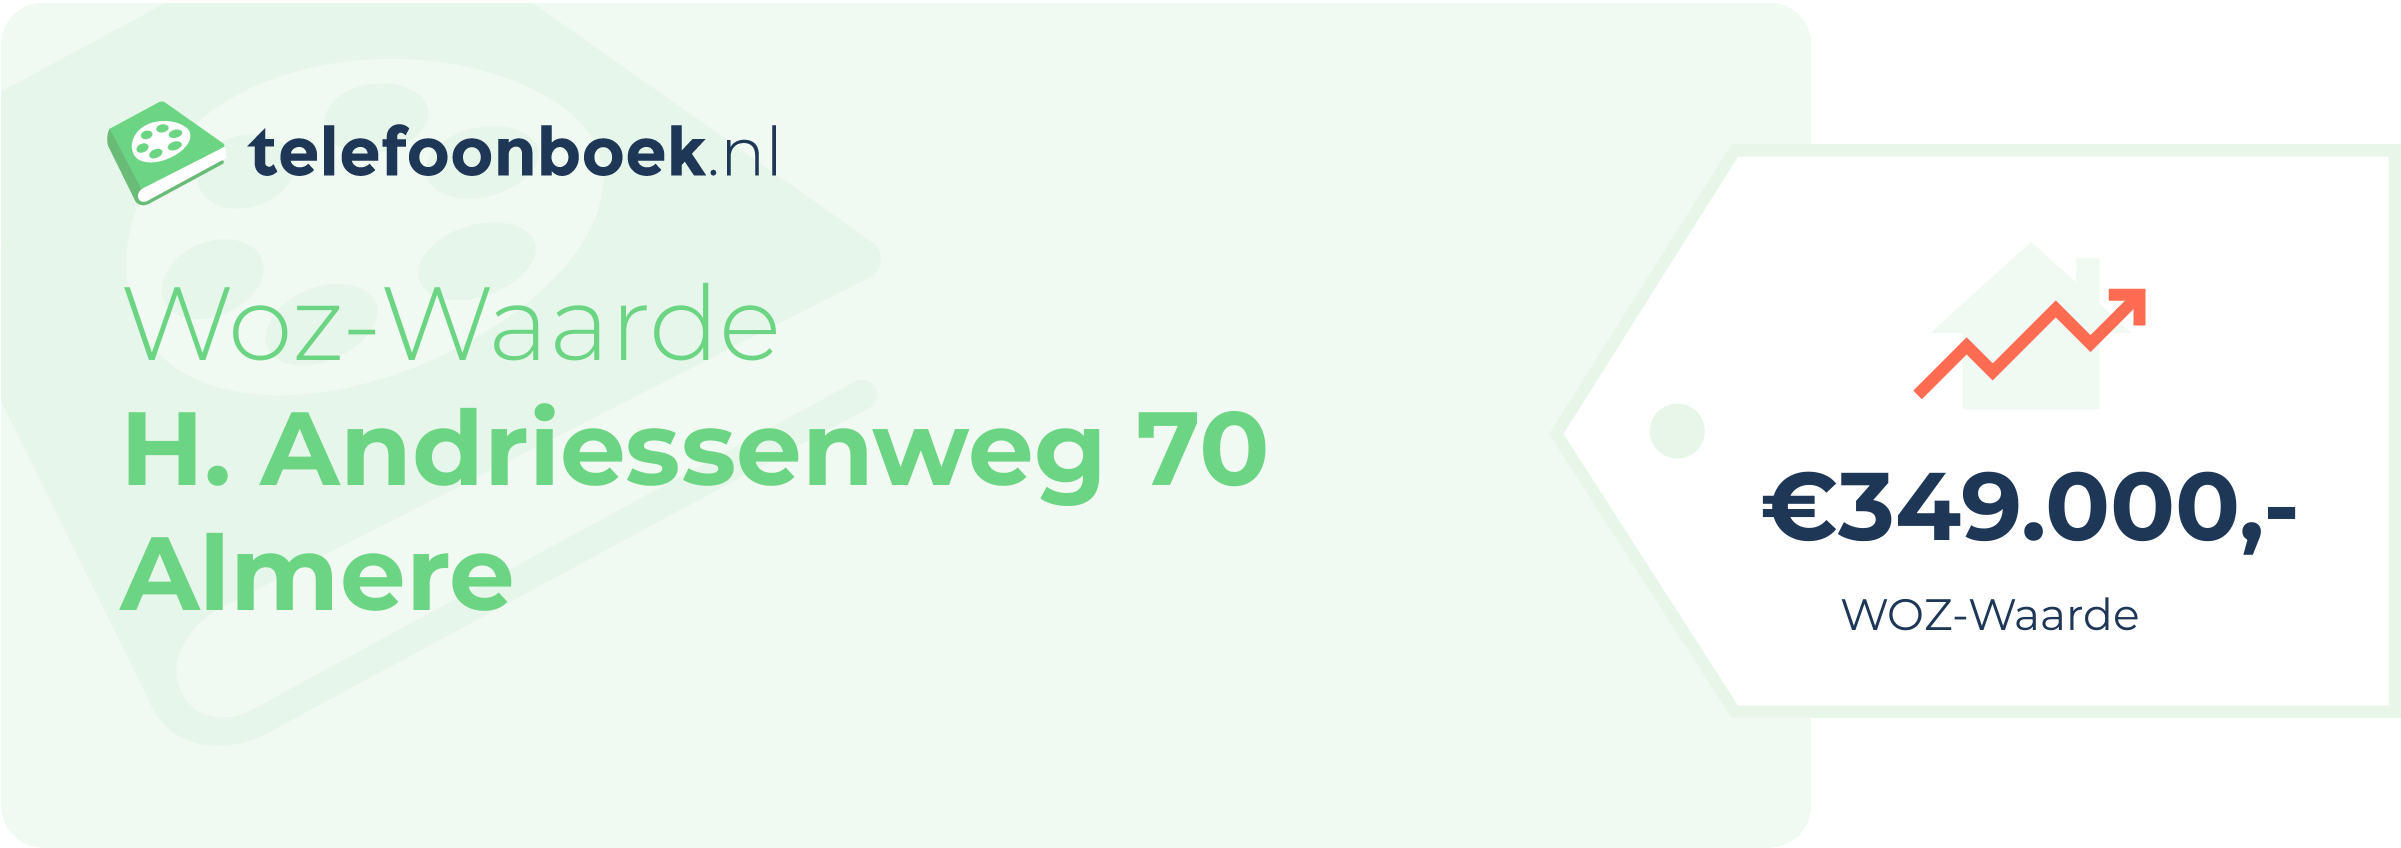 WOZ-waarde H. Andriessenweg 70 Almere